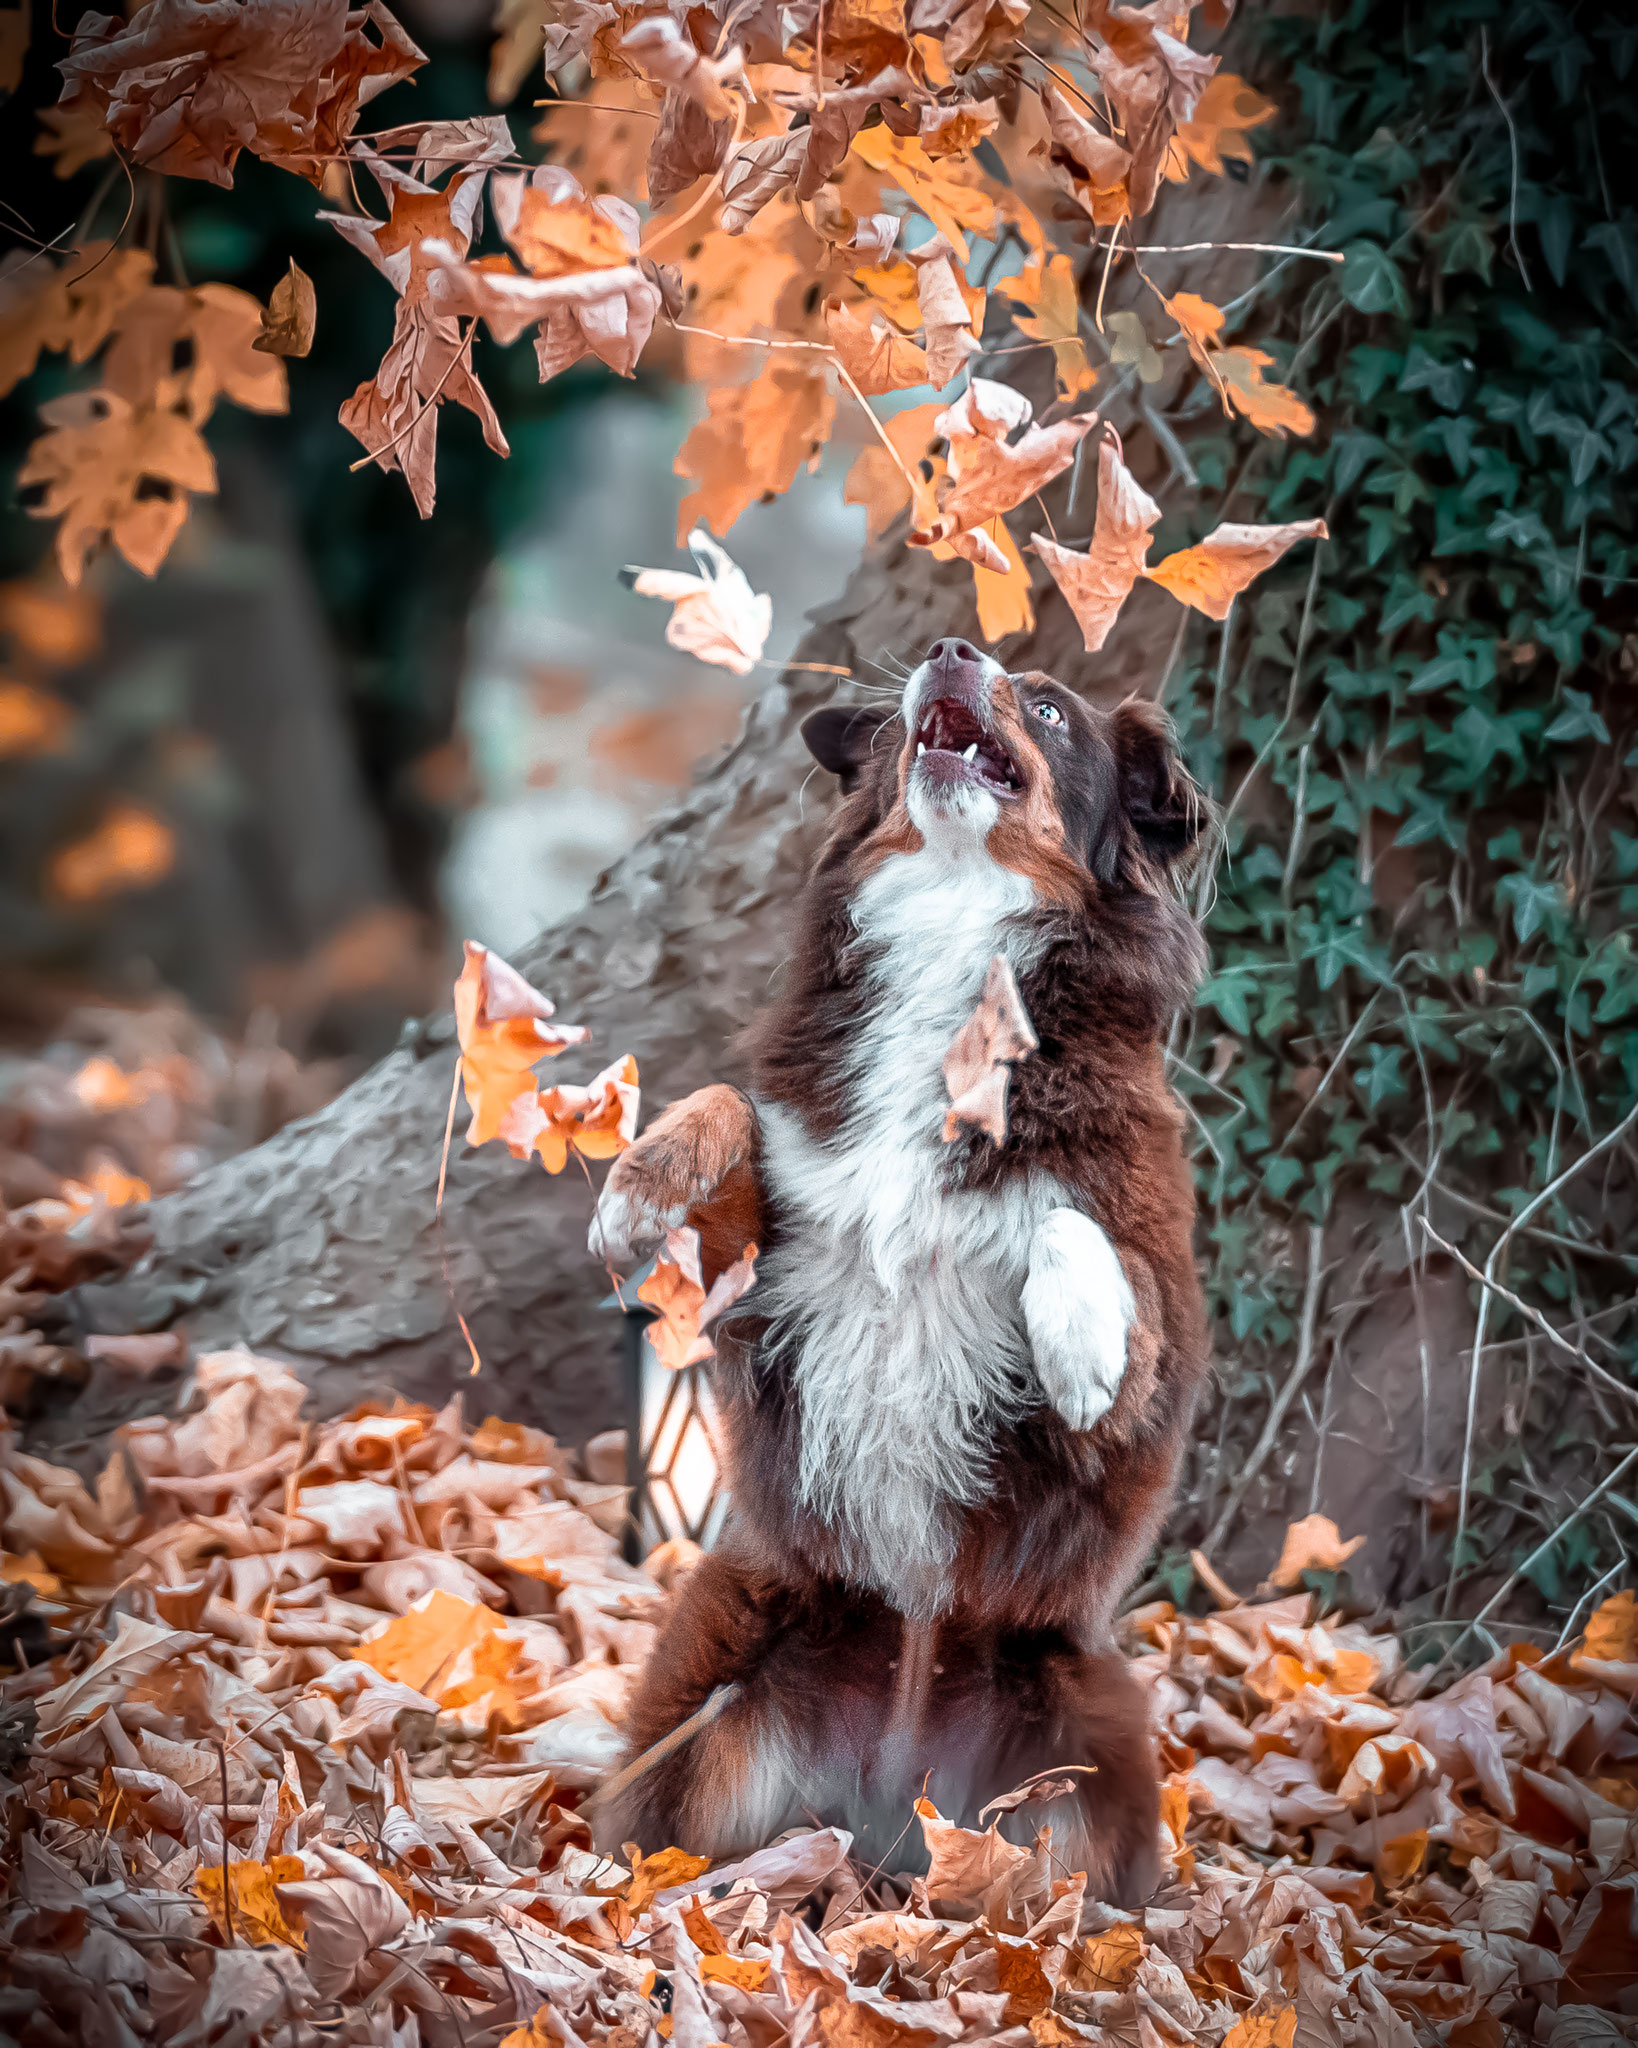 Photo-Walk im Jenisch Park: das Spiel mit den bunten Blättern begeistert die Hunde und sorgt für tolle Fotos